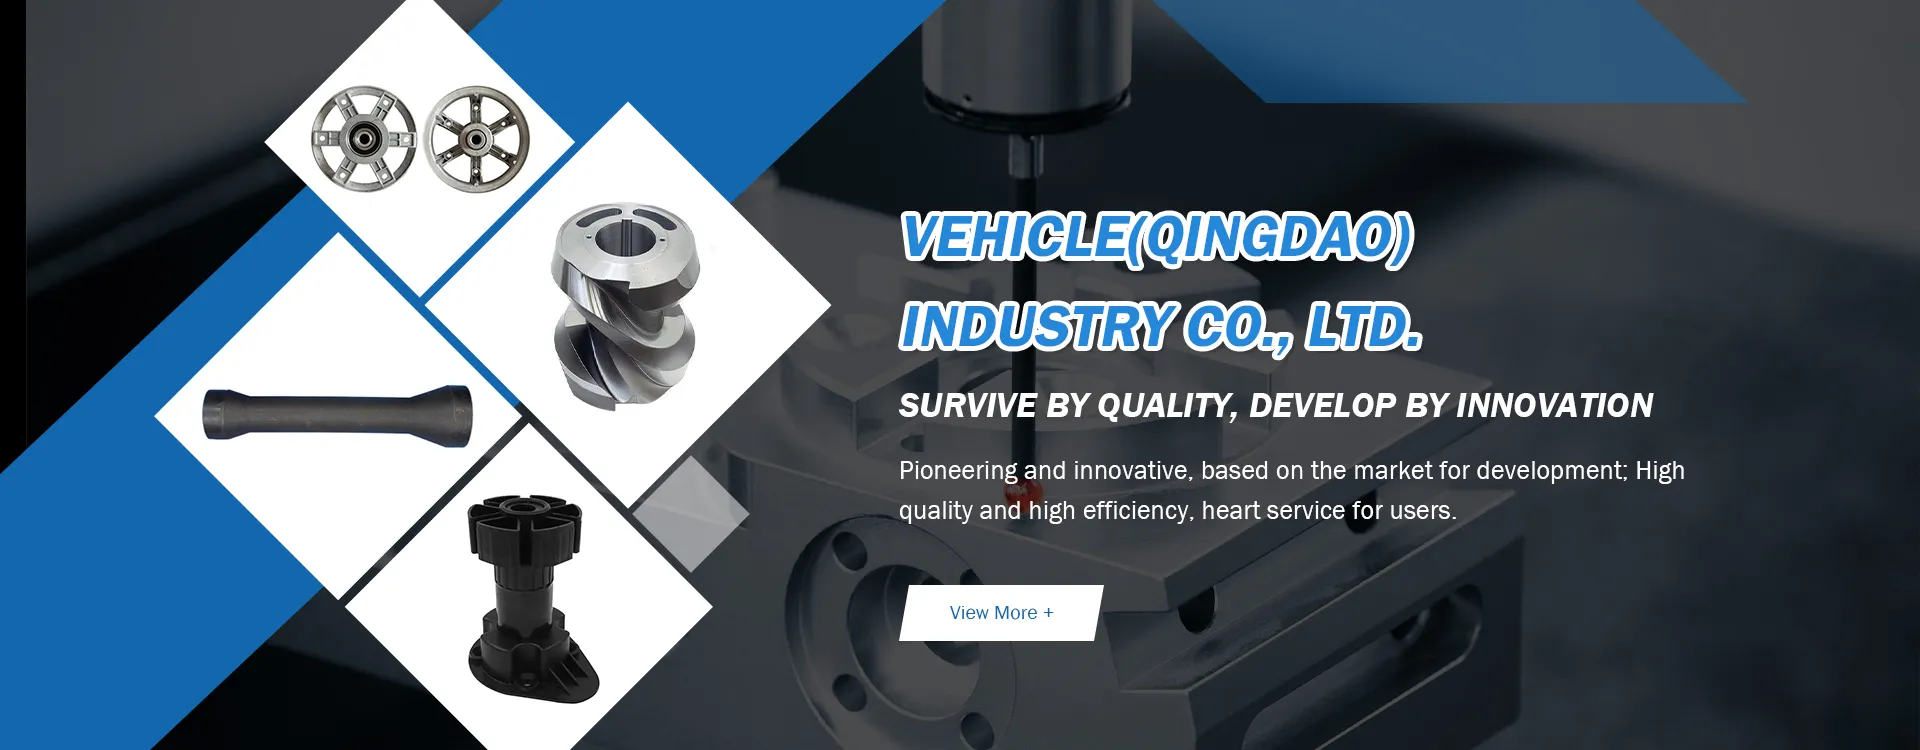 Vehicle (Qingdao) Industry Co., Ltd.